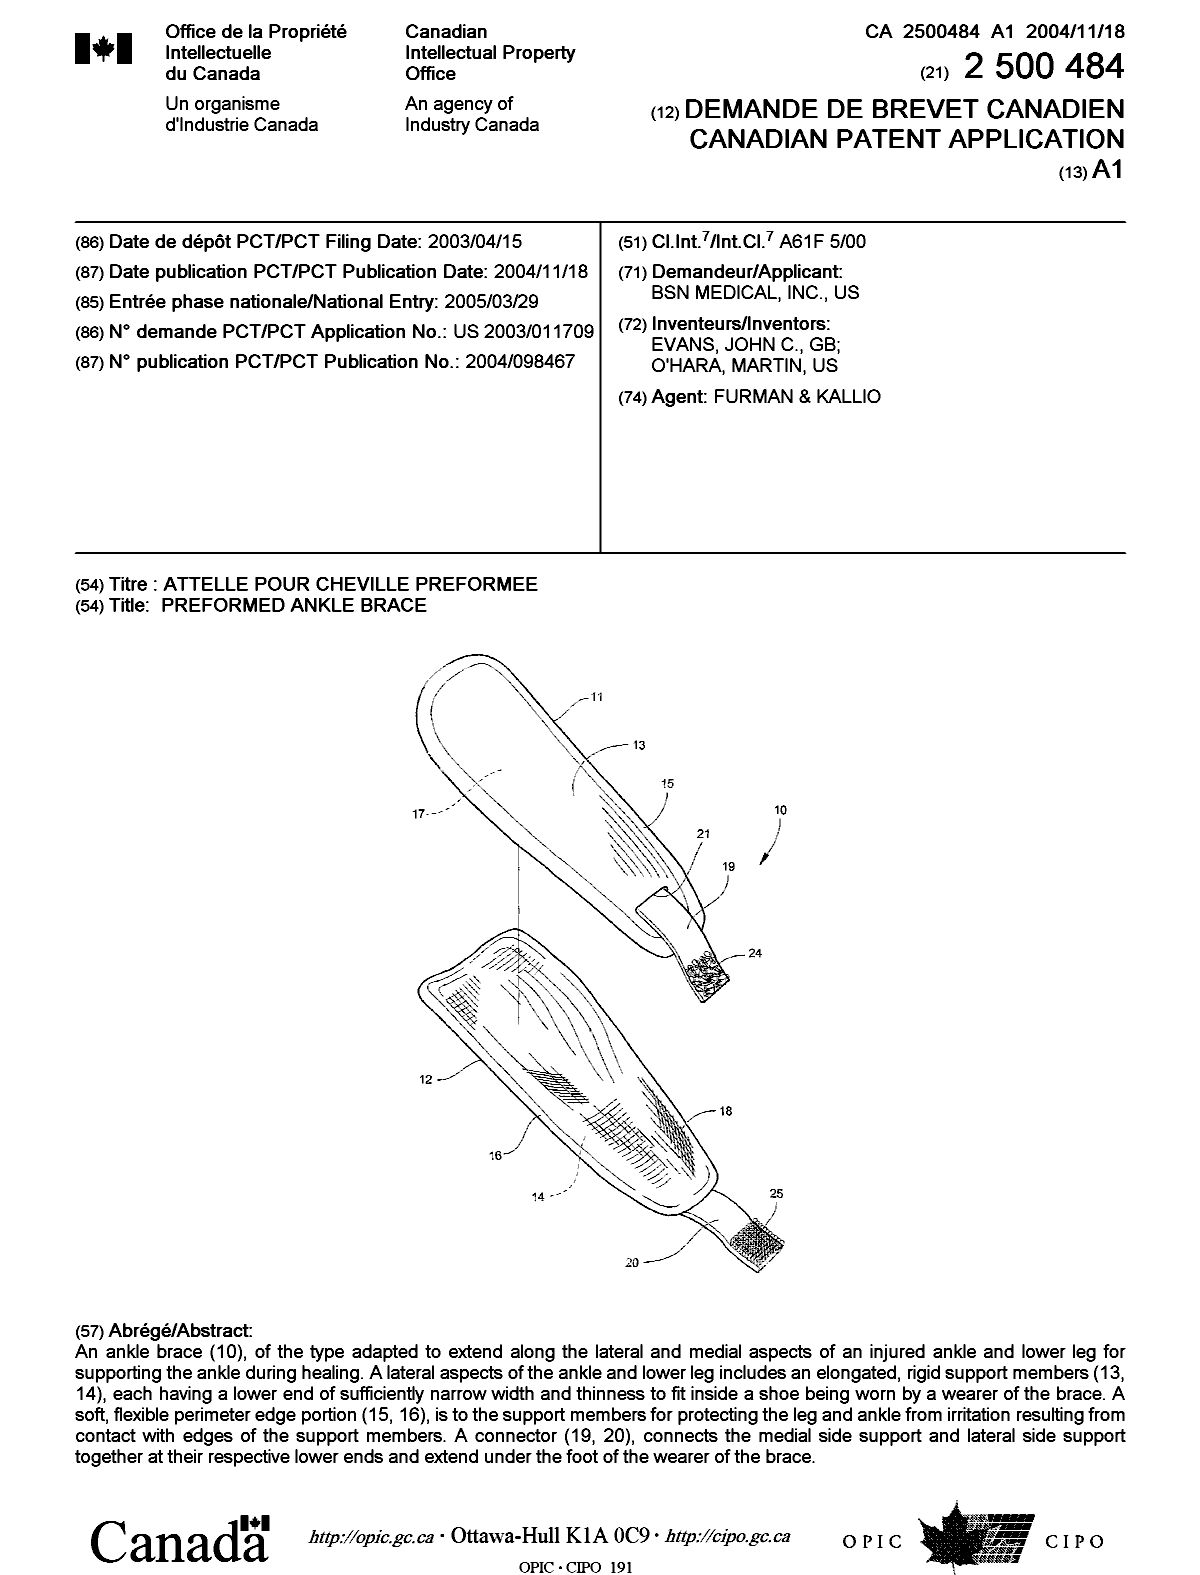 Document de brevet canadien 2500484. Page couverture 20050620. Image 1 de 1